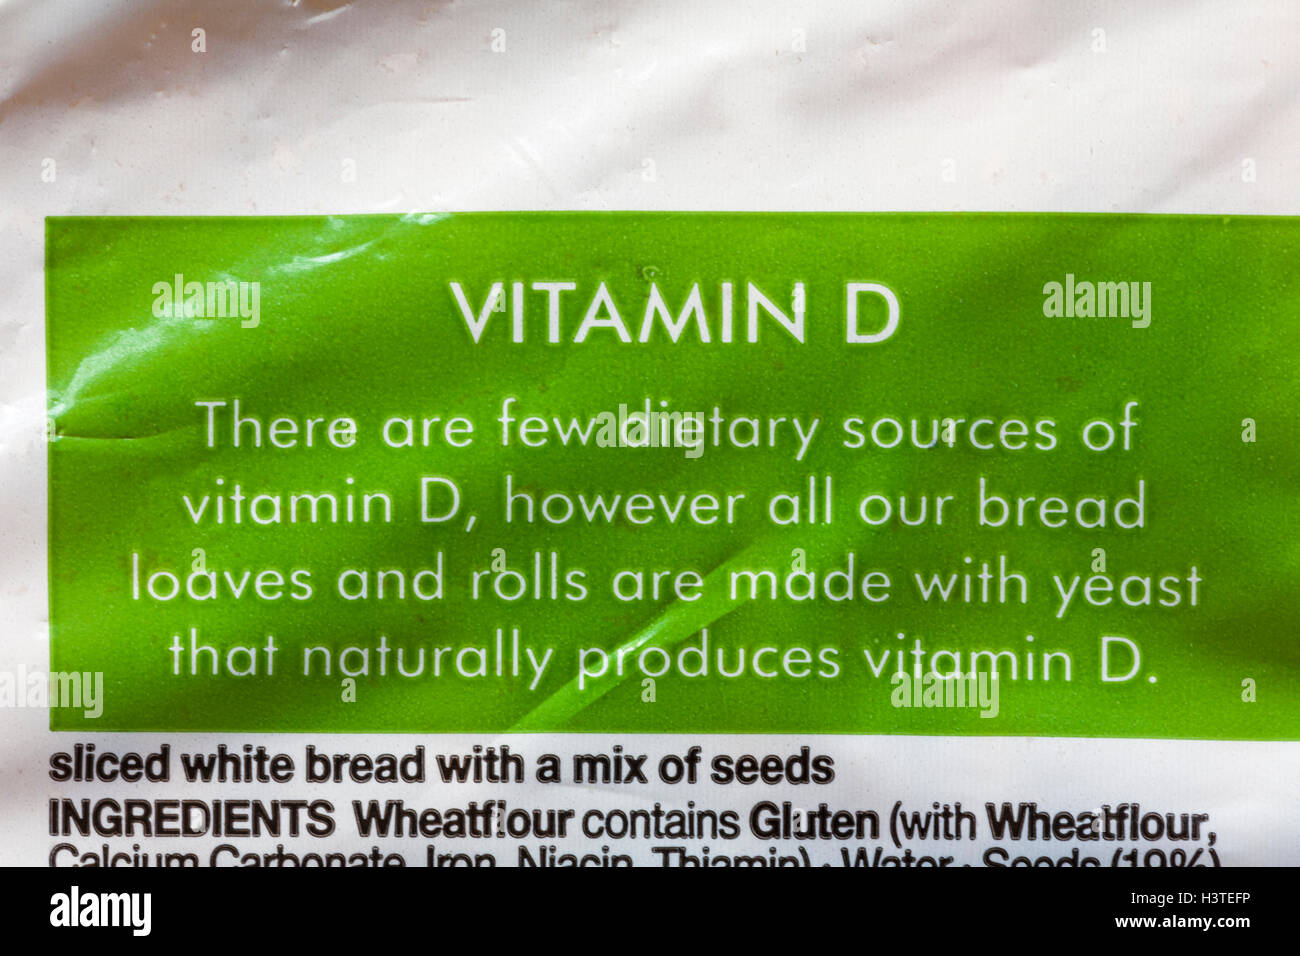 Vitamina D información sobre hogaza de M&S Super promocionados pan - rodajas de pan blanco con una mezcla de semillas Foto de stock